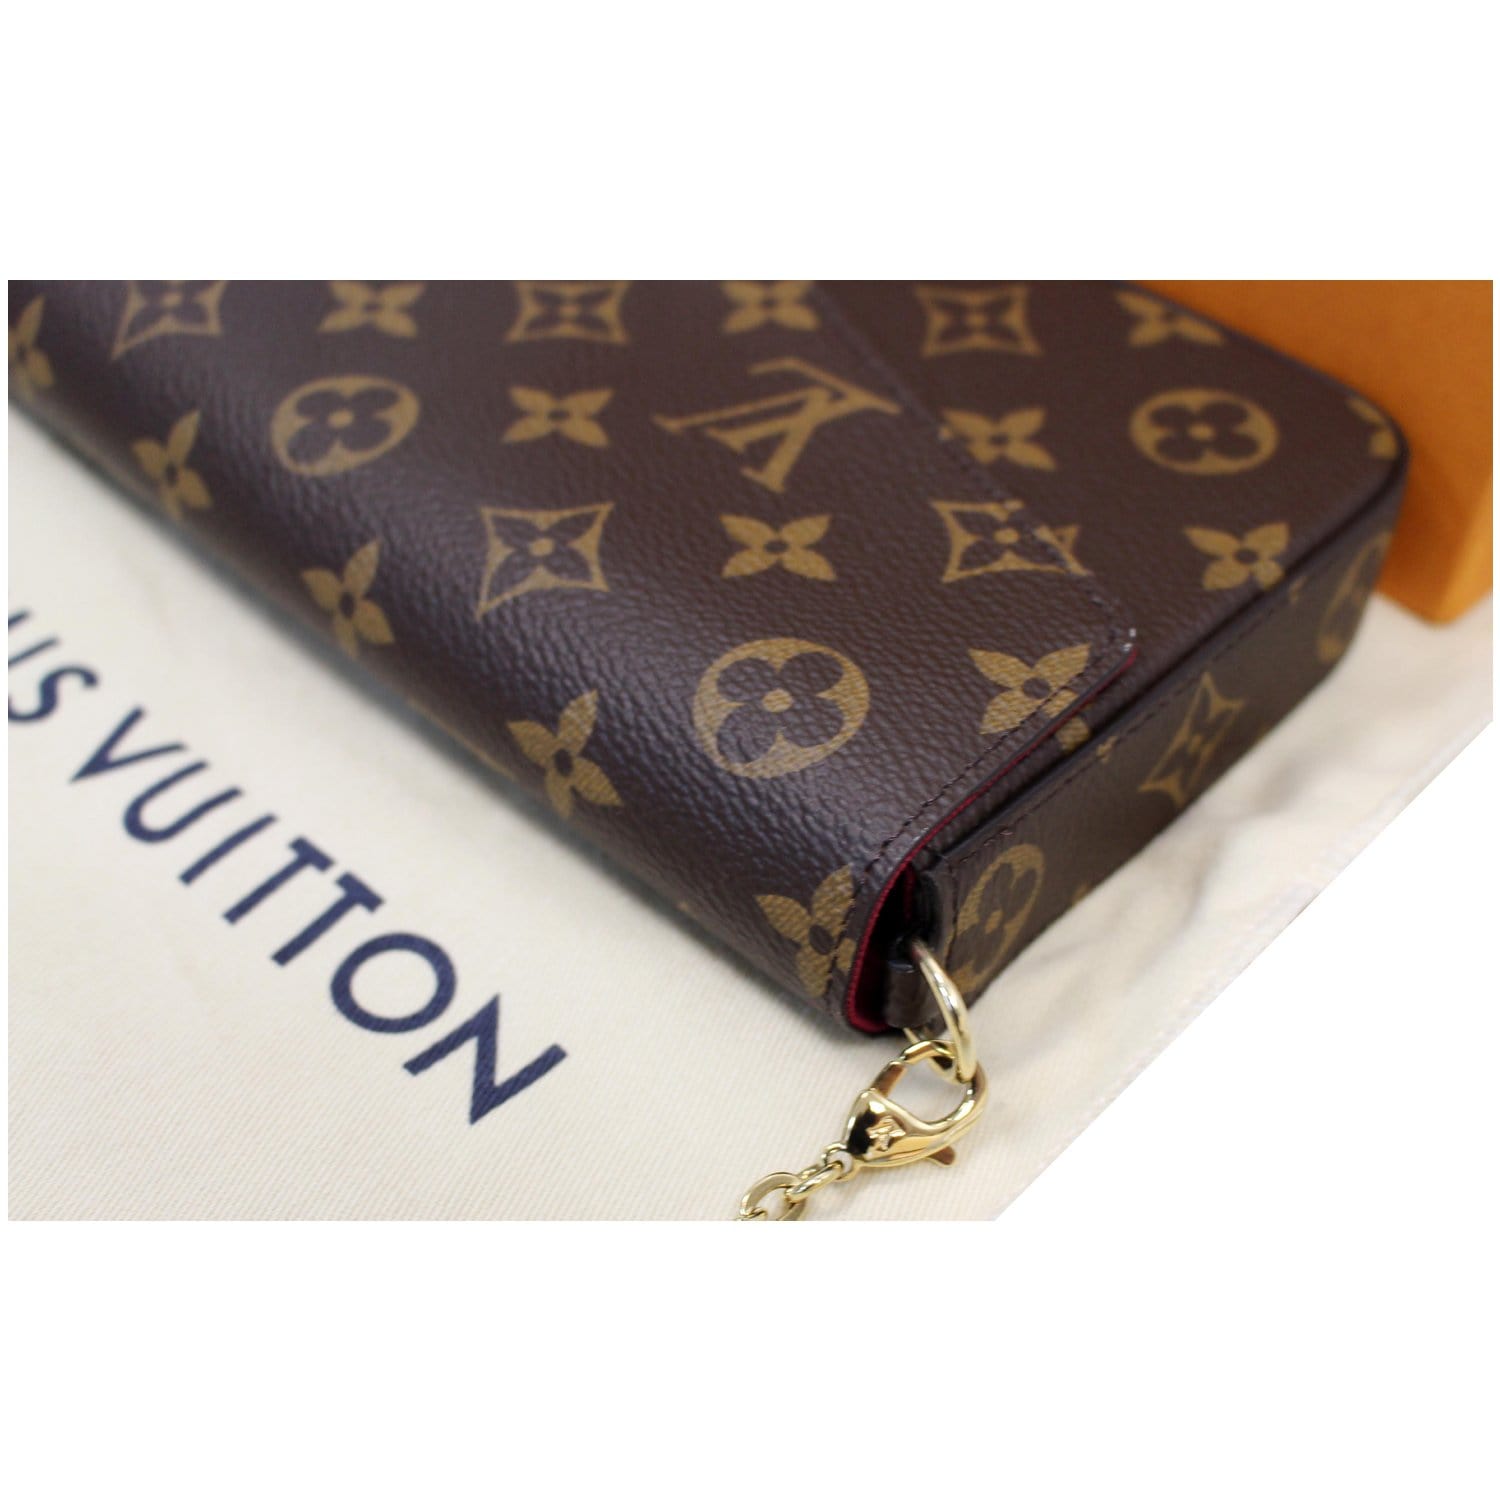 Louis Vuitton Pochette Felicie Monogram Canvas Bag